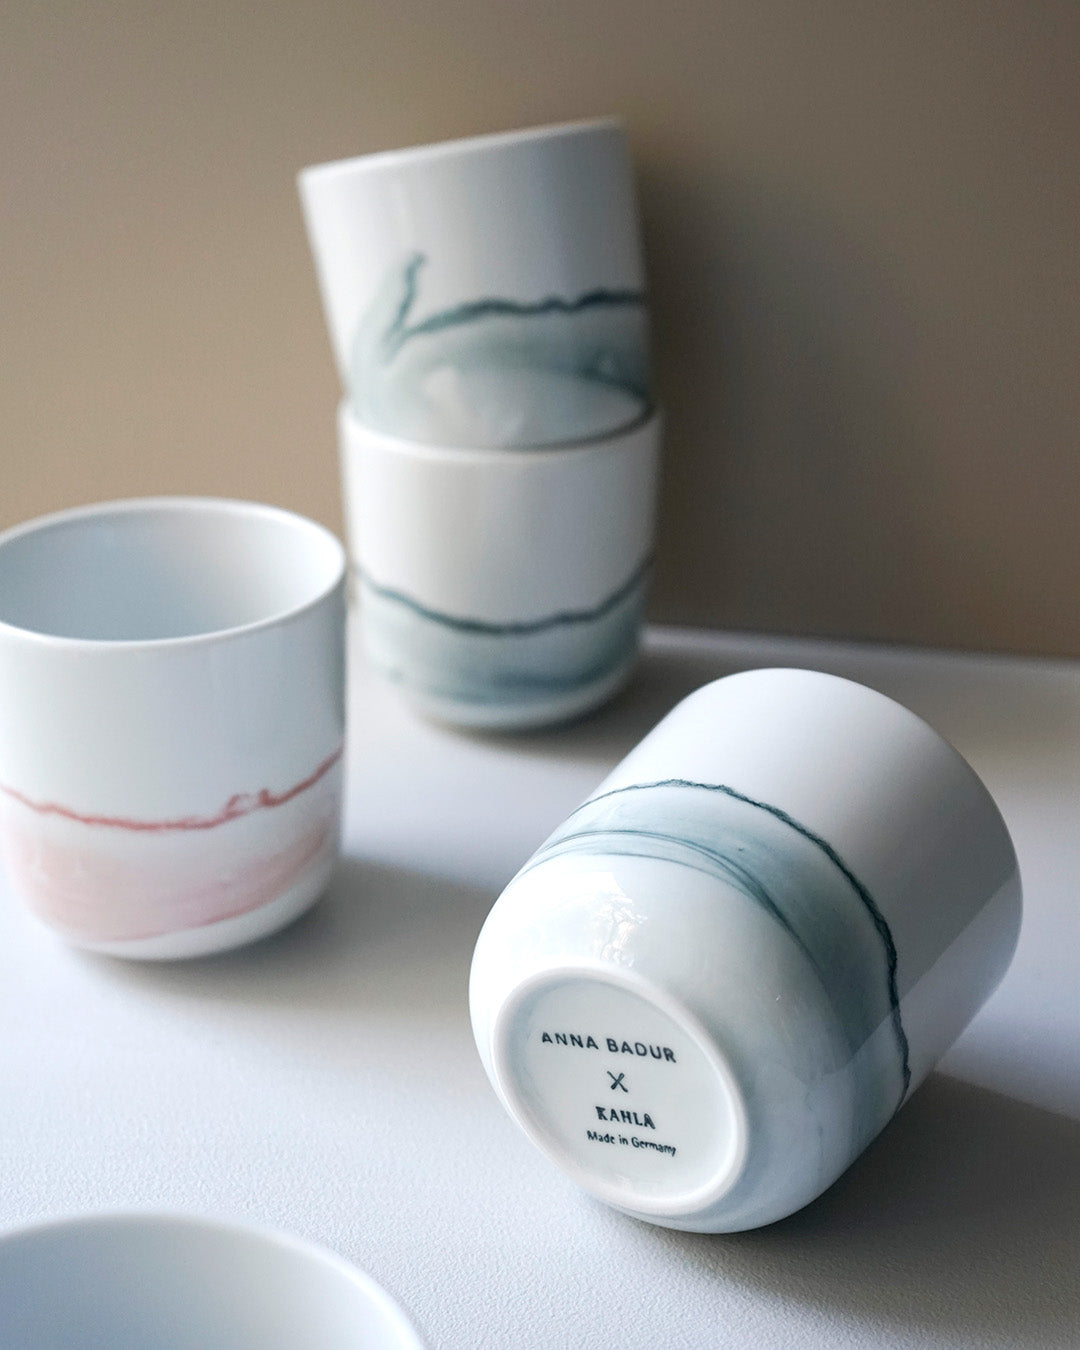 TIDE Porcelain Glazed Cup Medium MIX - Set of 4 (-20%)